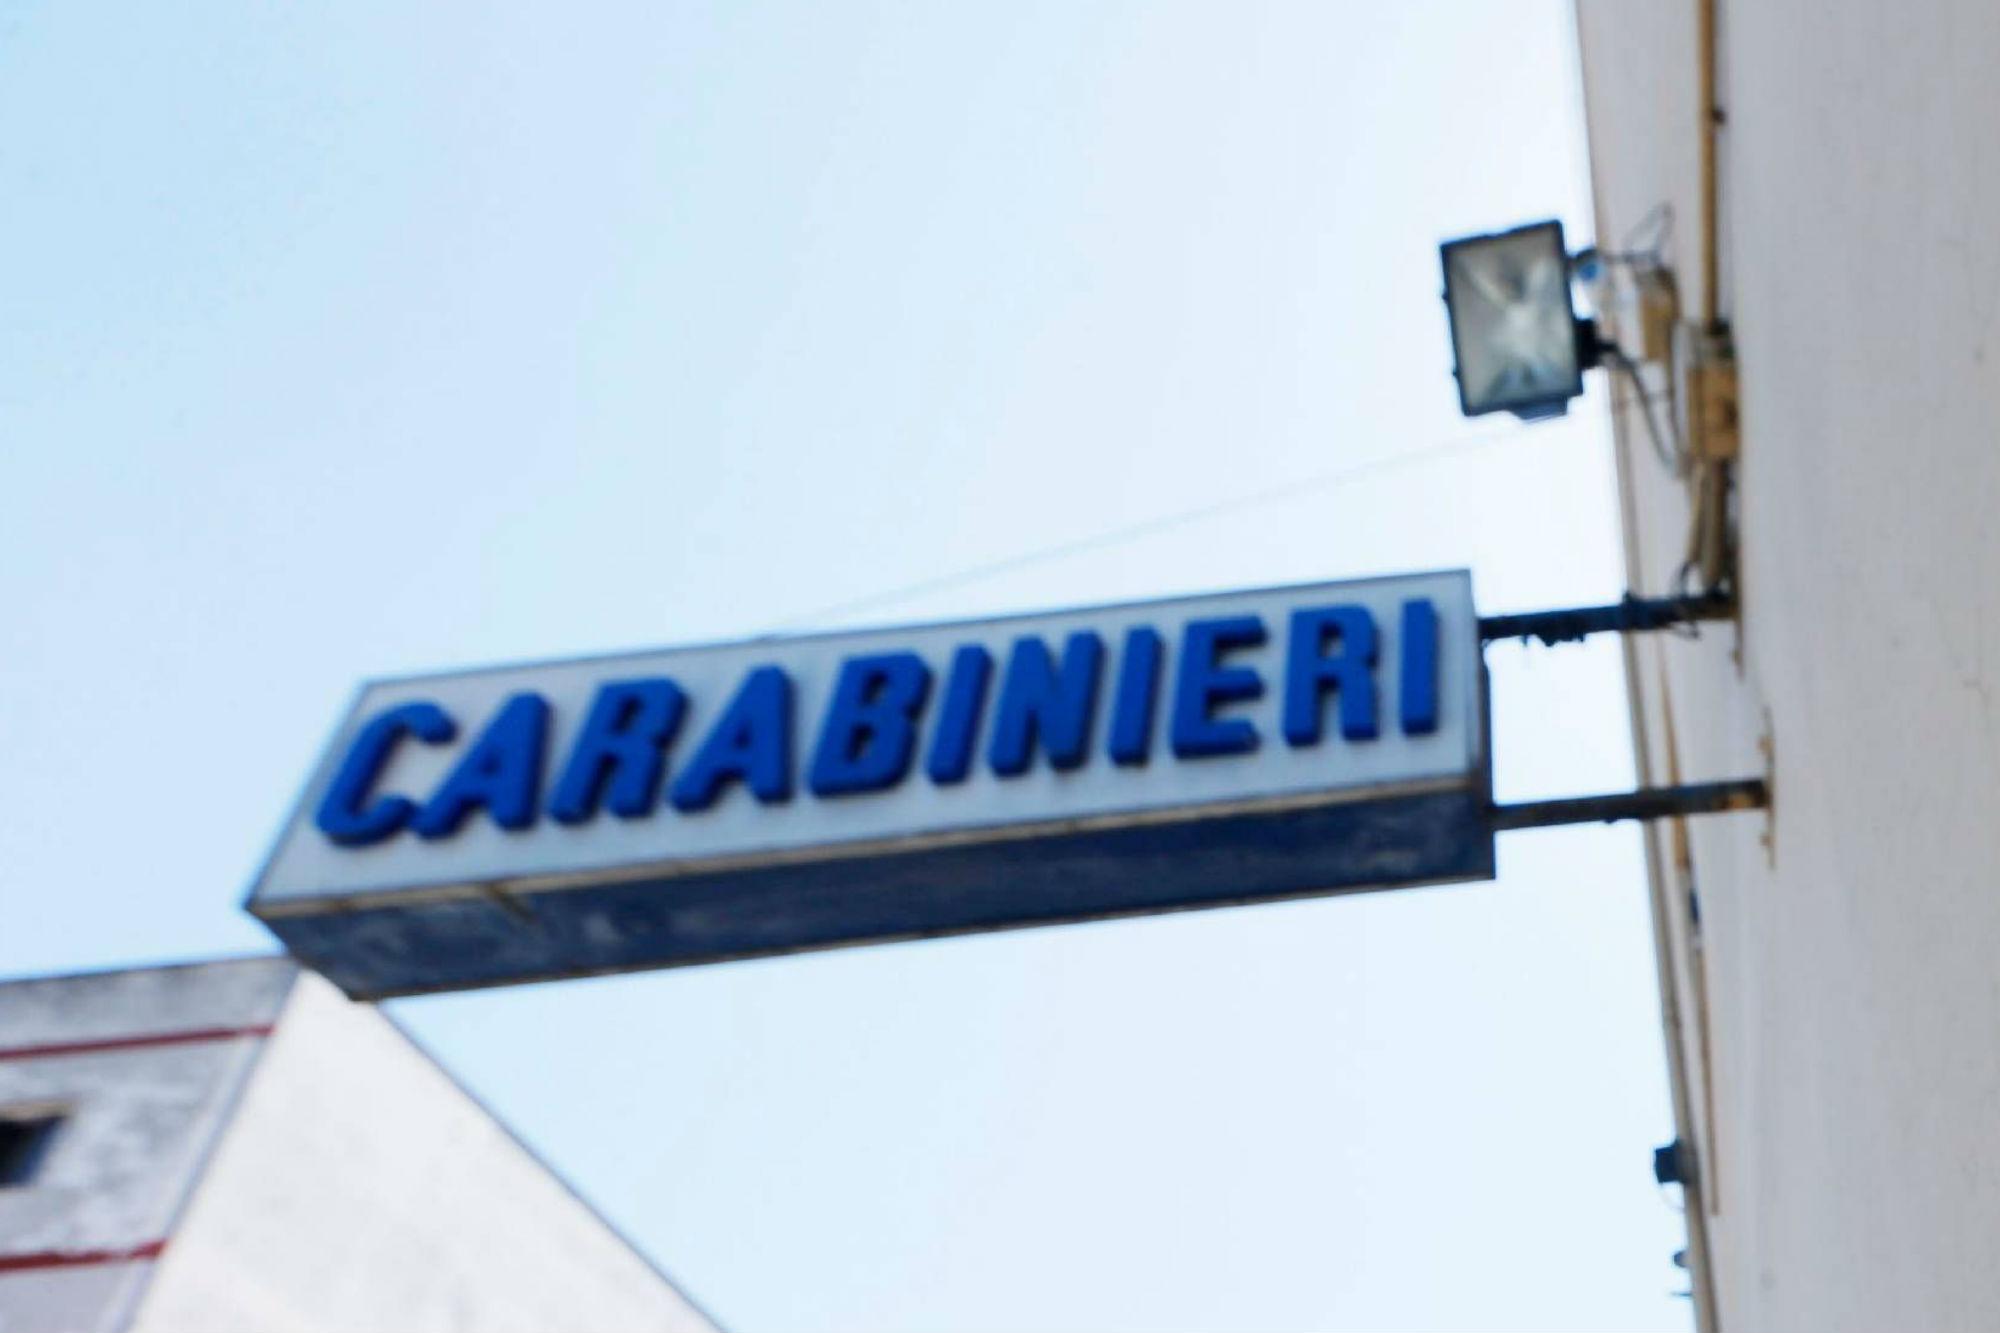 Catania - donna trovata impiccata in casa di villeggiatura: non si esclude alcuna ipotesi